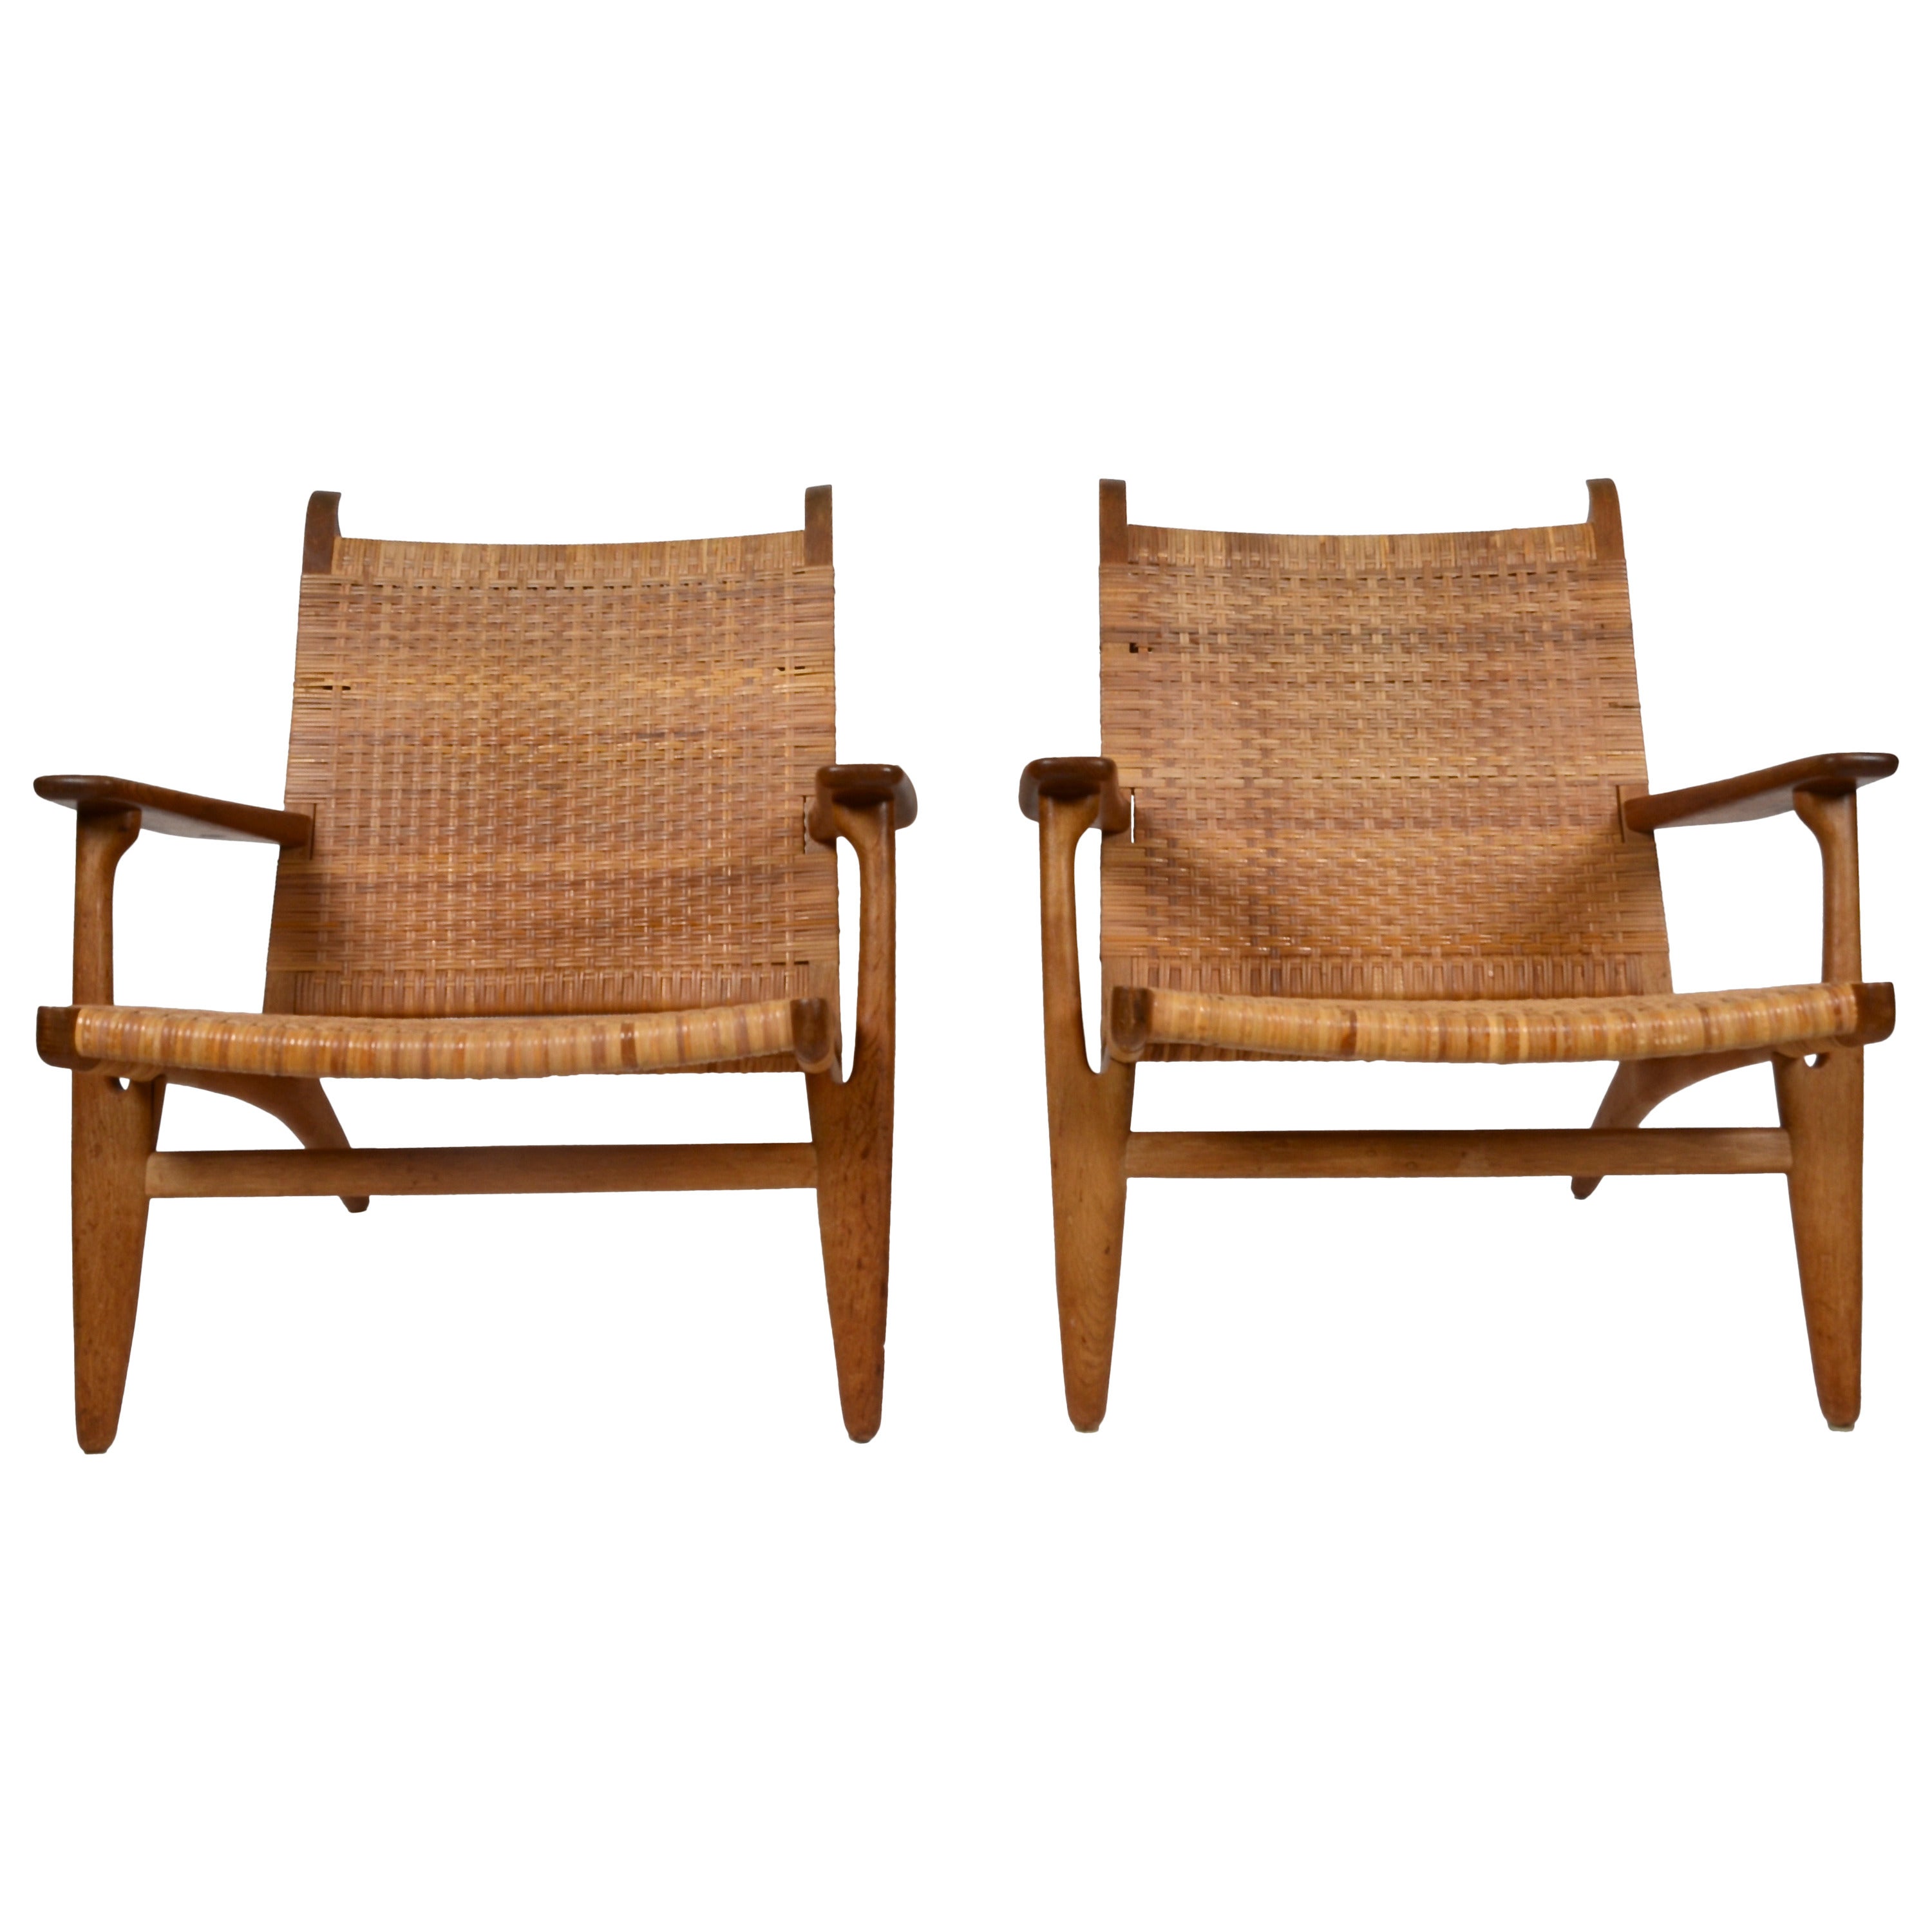 Hans J. Wegner Easy Chairs, model CH27, Carl Hansen & Son